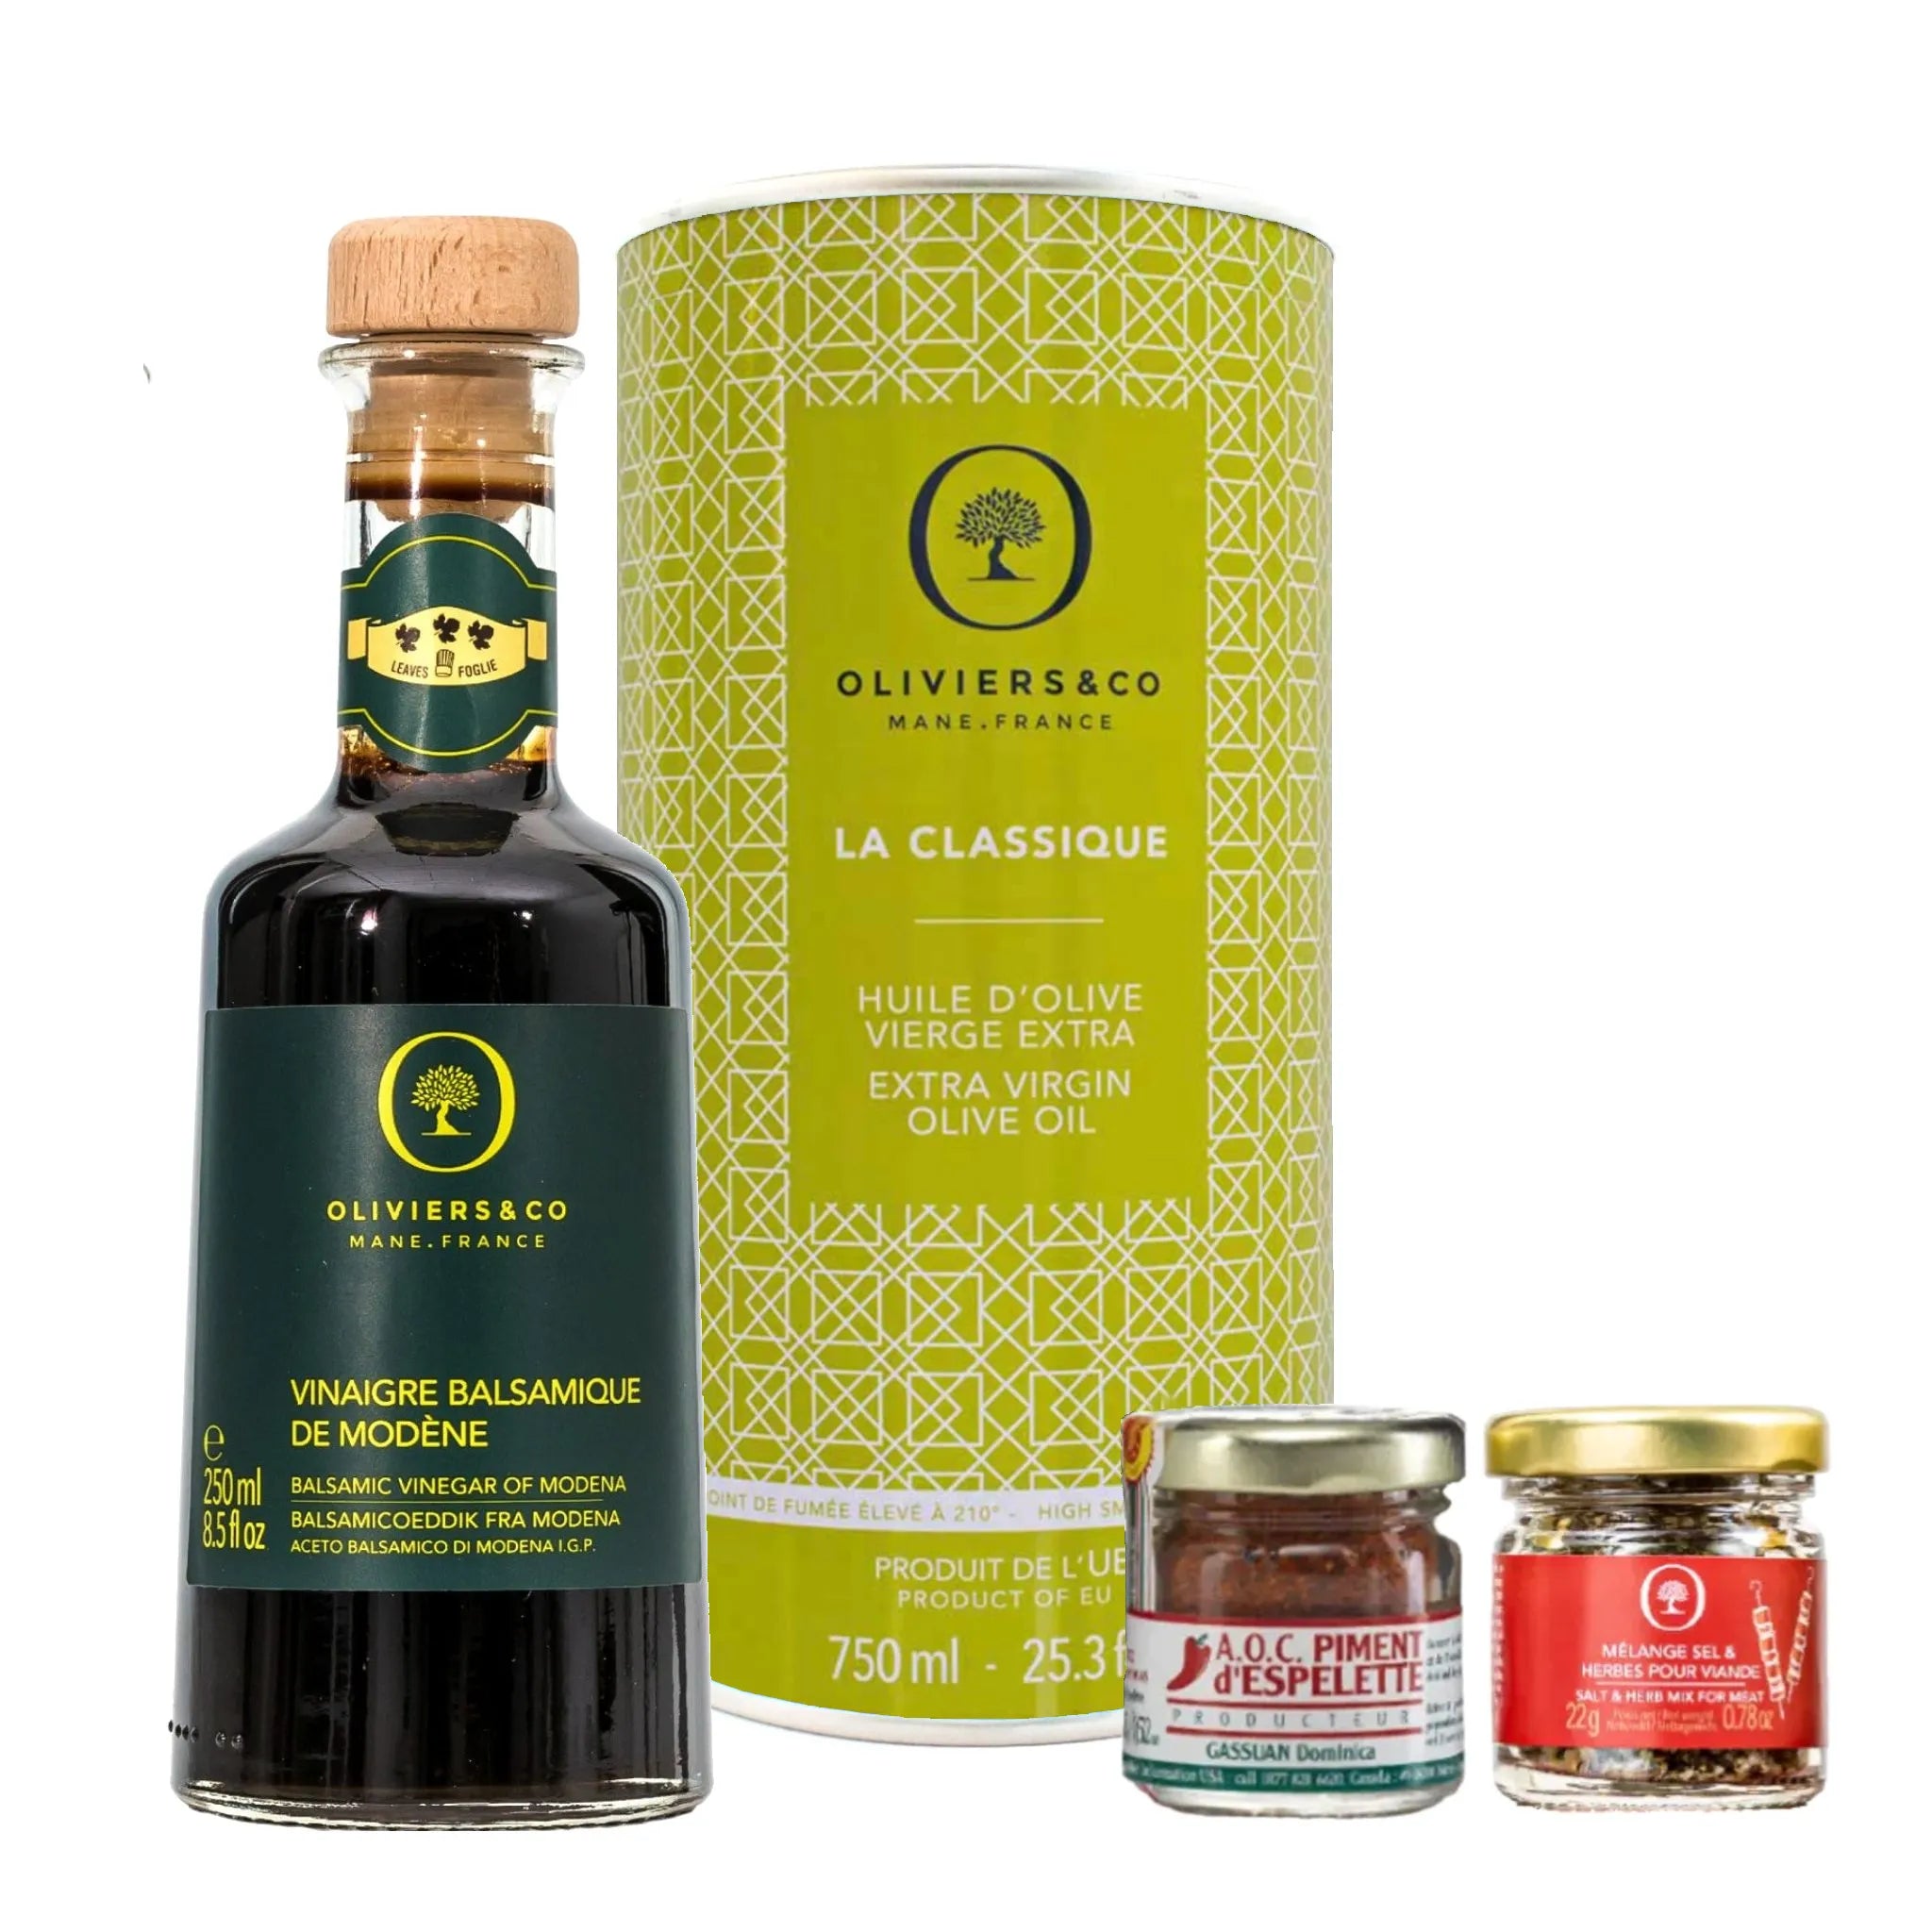 Kød grill master kit med olivenolie, balsamico, piment d'espelette og kryddersalt fra Oliviers & Co